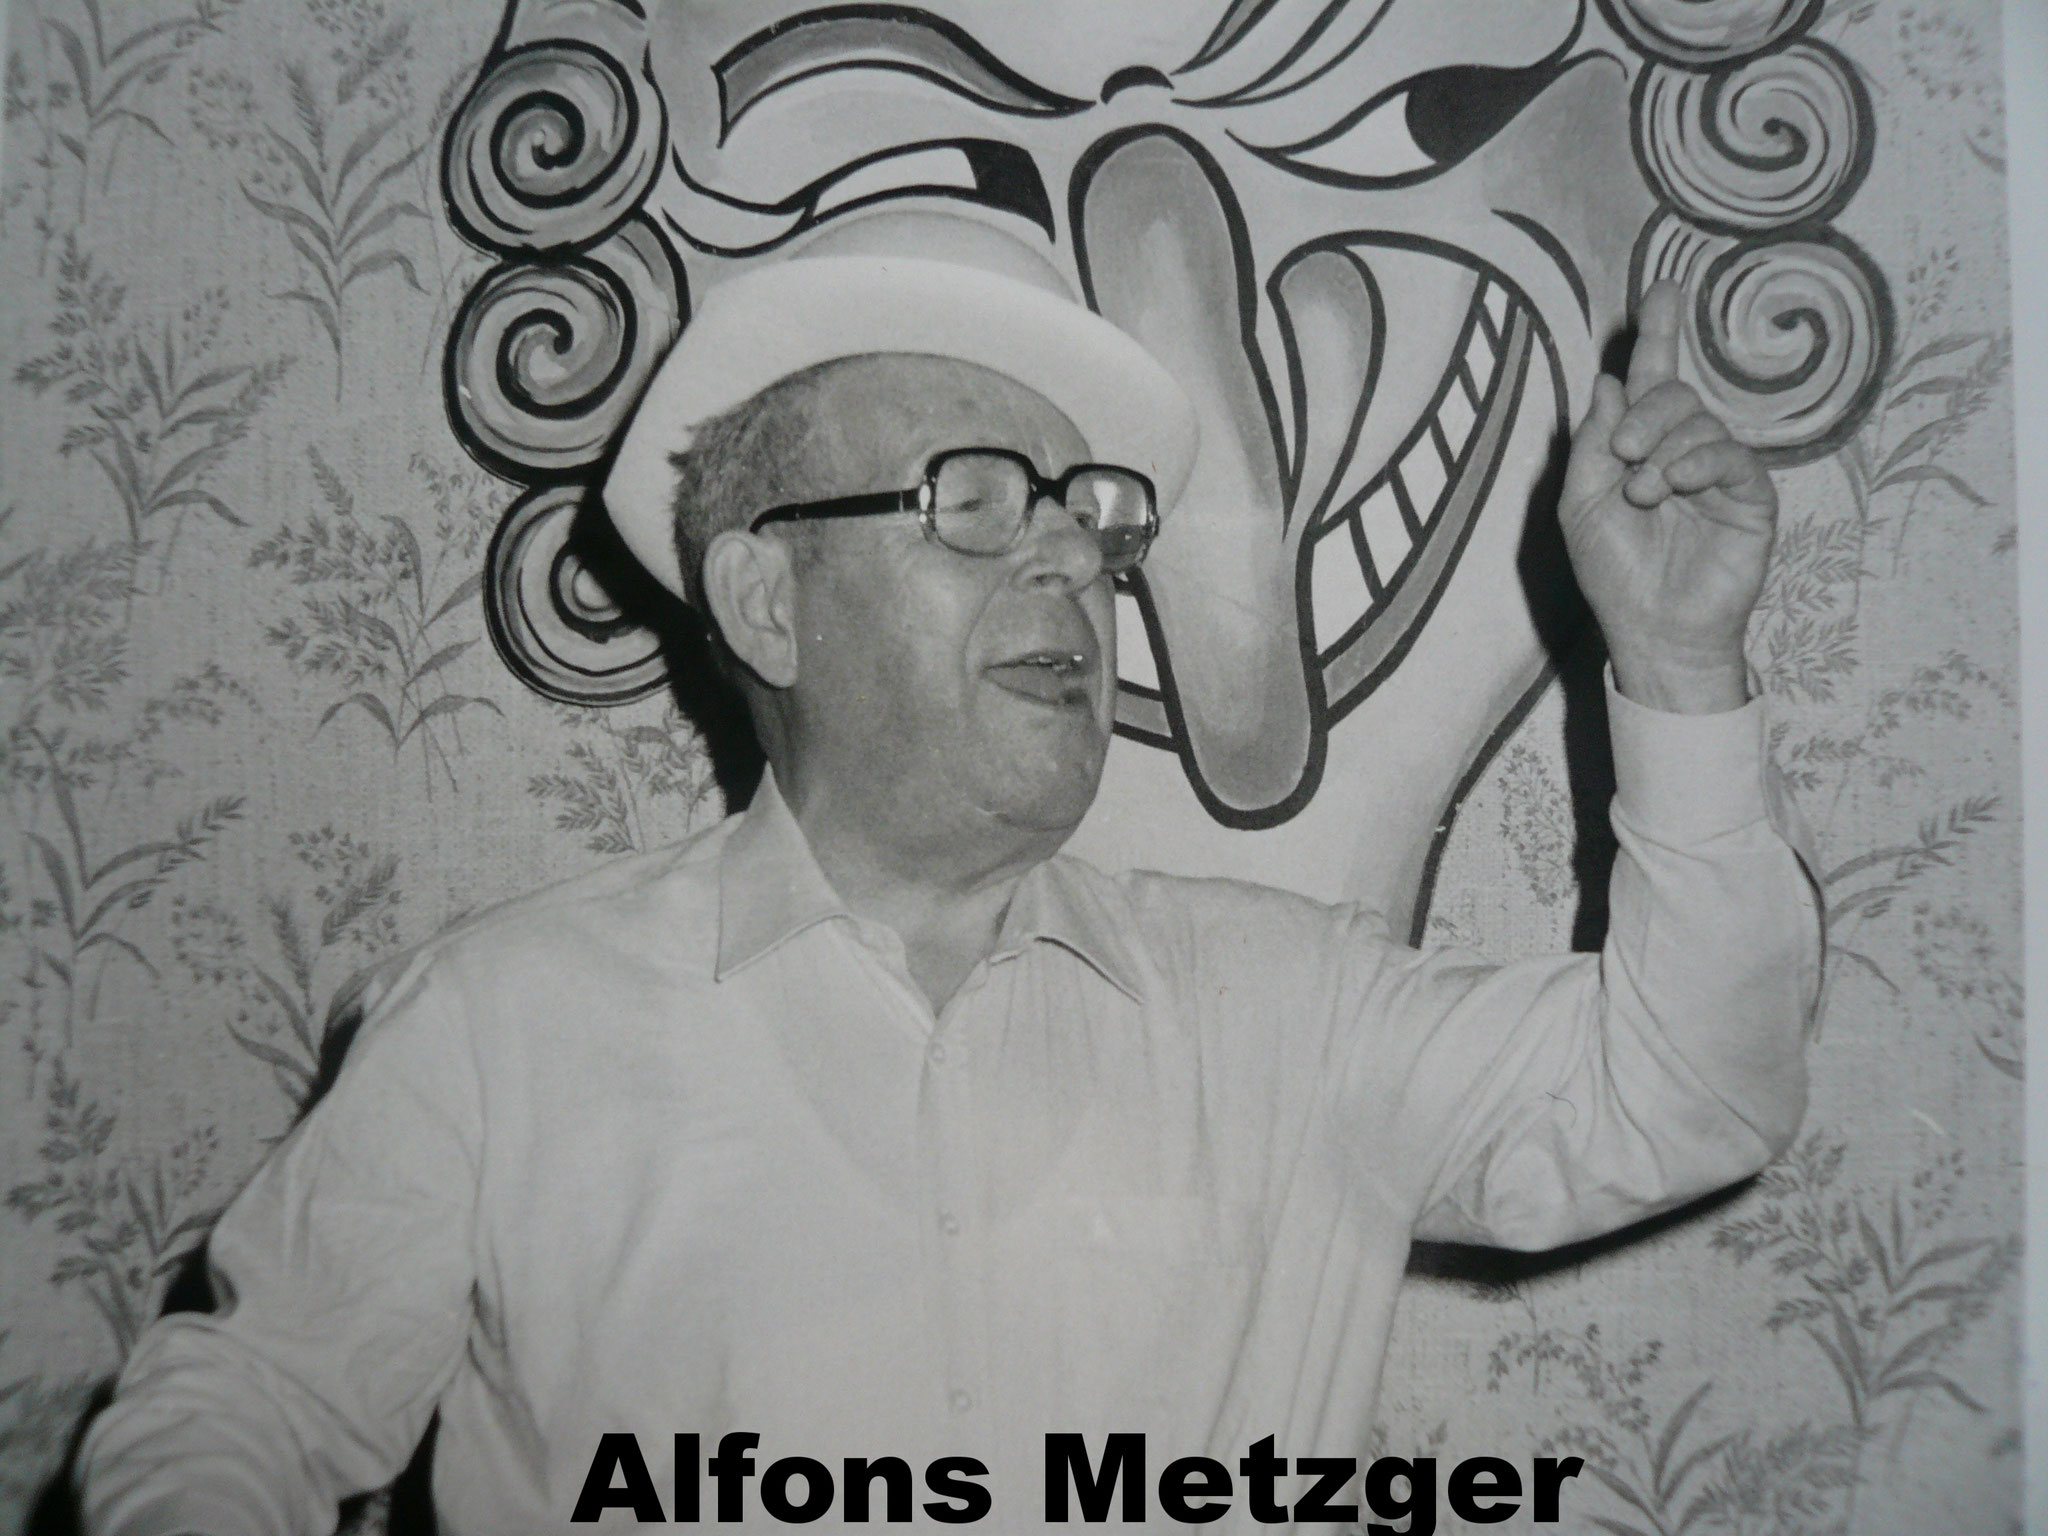 Alfongs Metzger